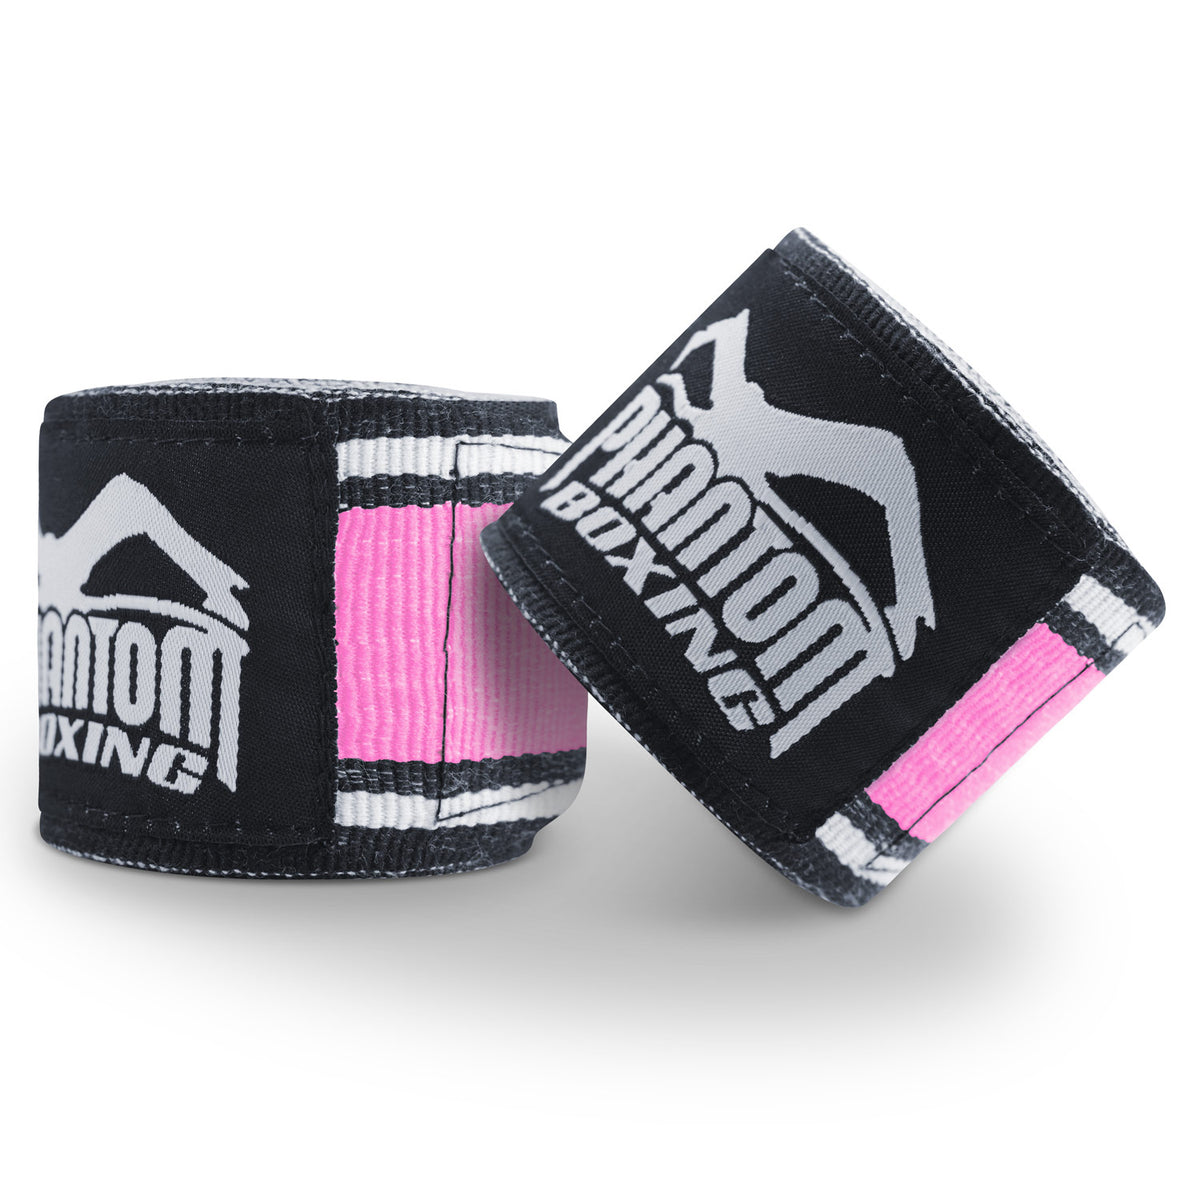 Phantom Boxbandagen für dein Kampfsporttraining.  Ideal für MMA, Muay Thai und Kickboxen. 450cm in den Farben Pink/Weiss.